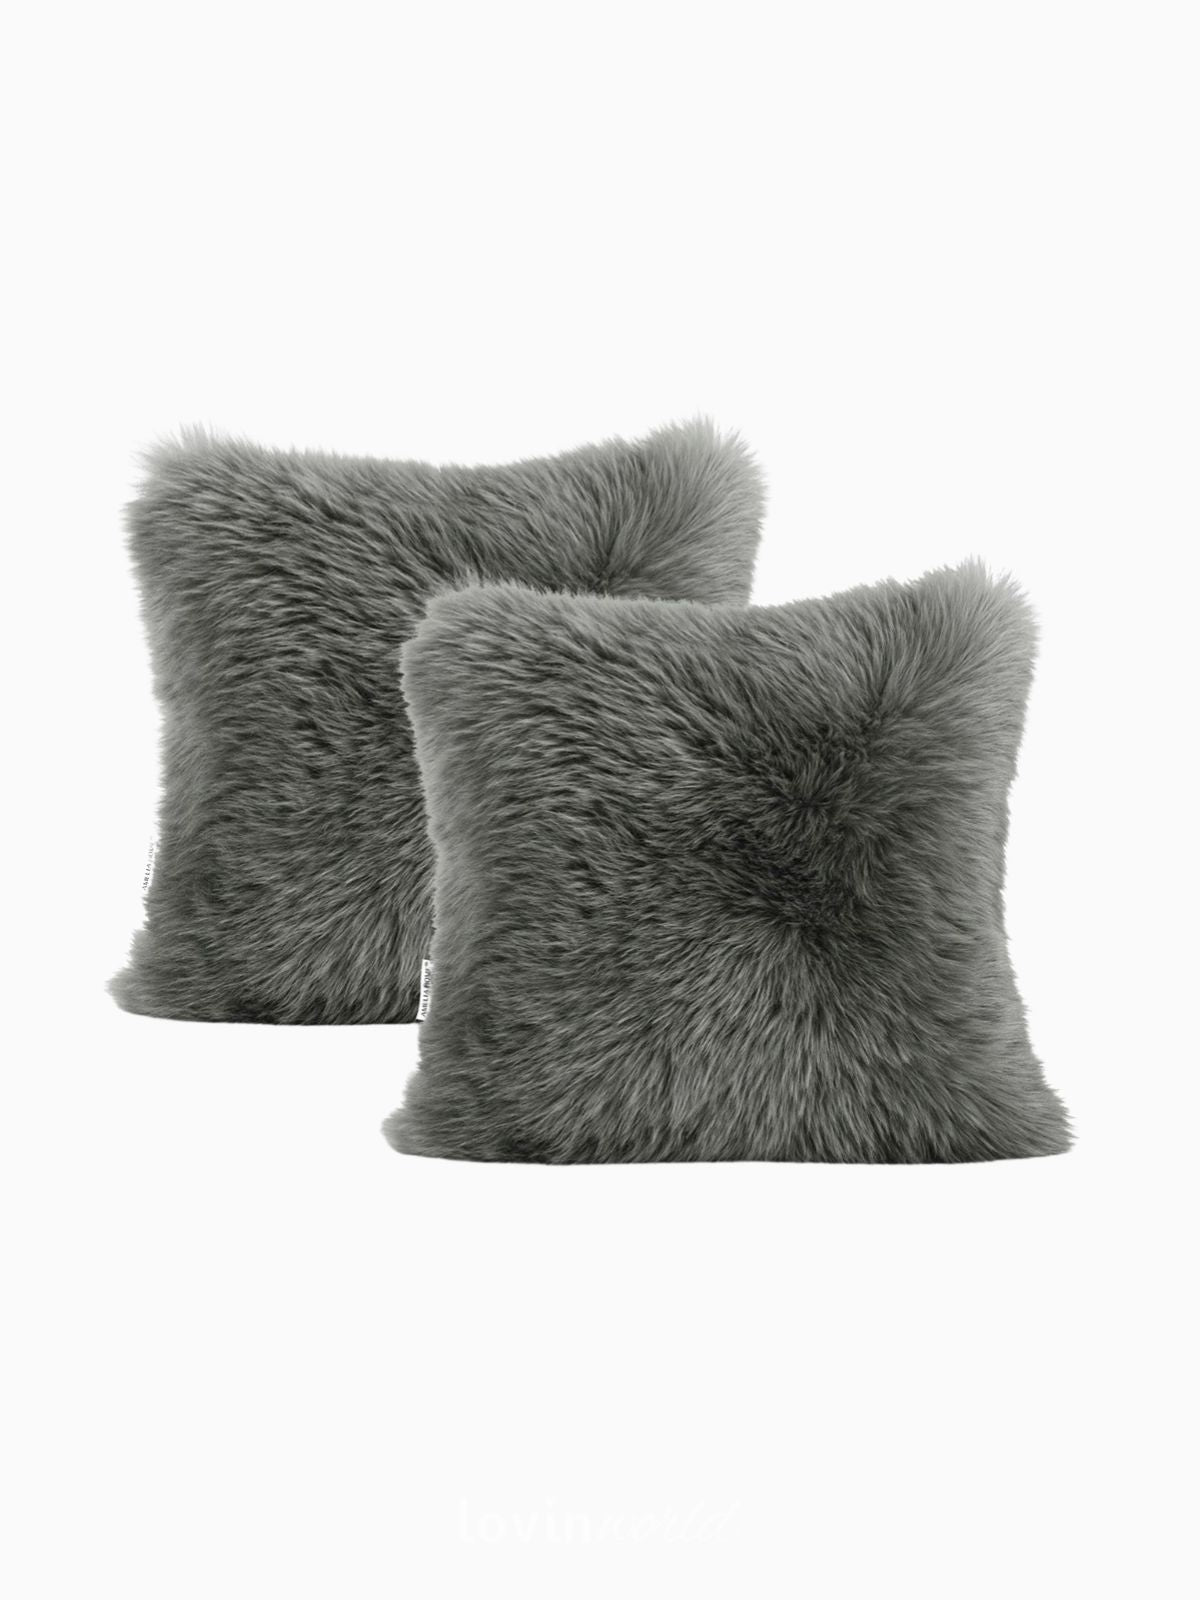 2 Federe per cuscino Dokka in colore grigio scuro 45x45 cm.-1